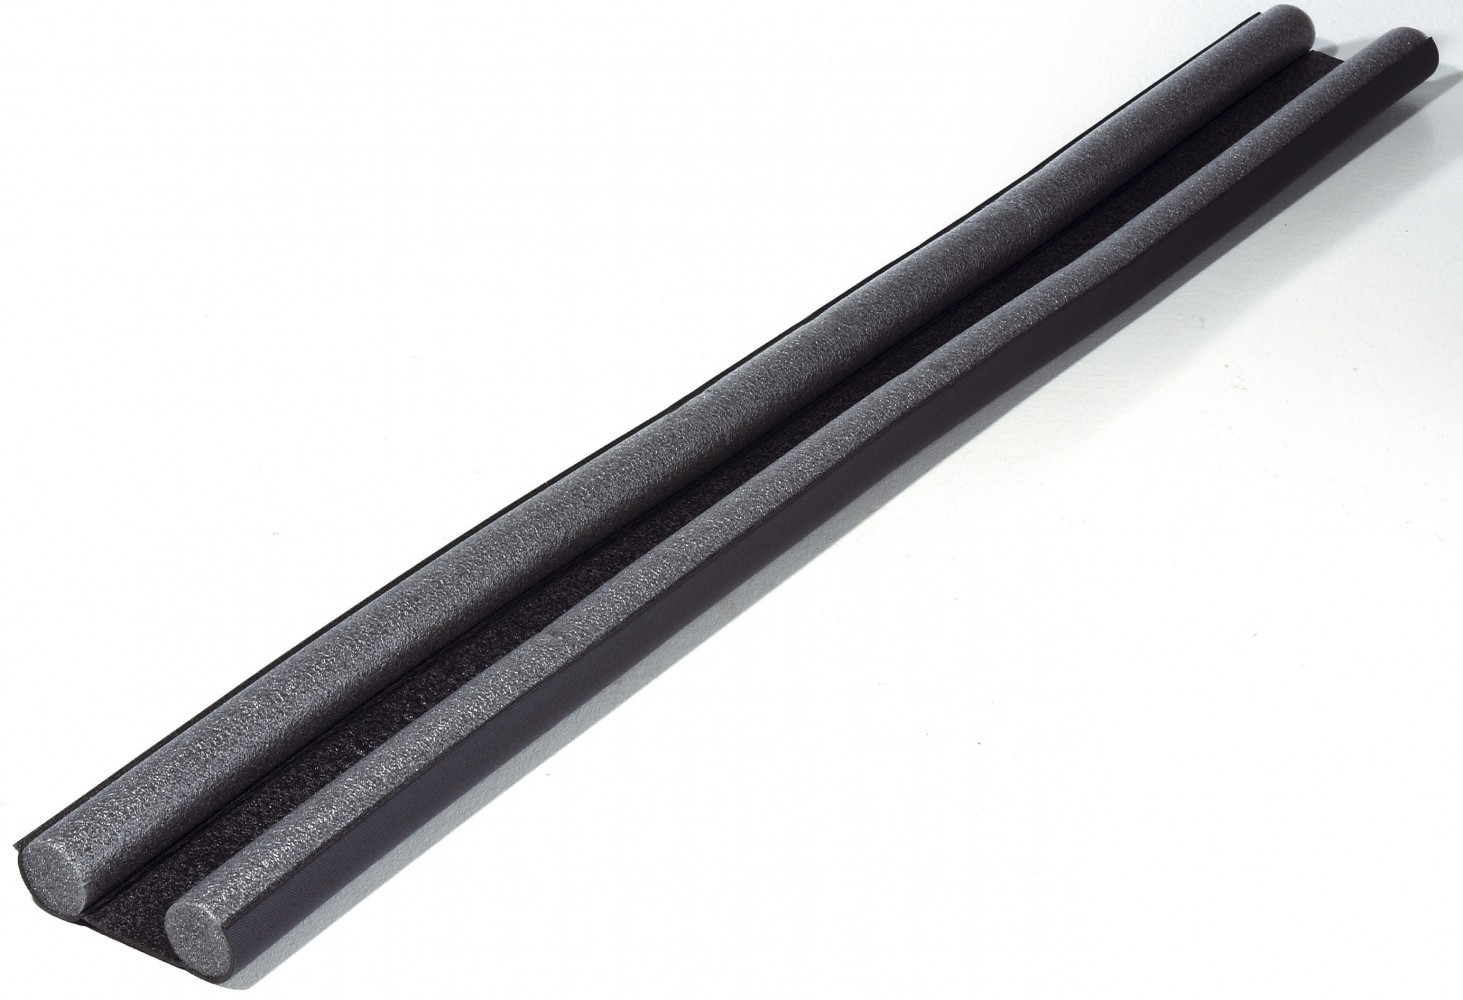 Bas de porte à glisser textile (bourrelet) ELLEN, L.95 cm gris anthracite